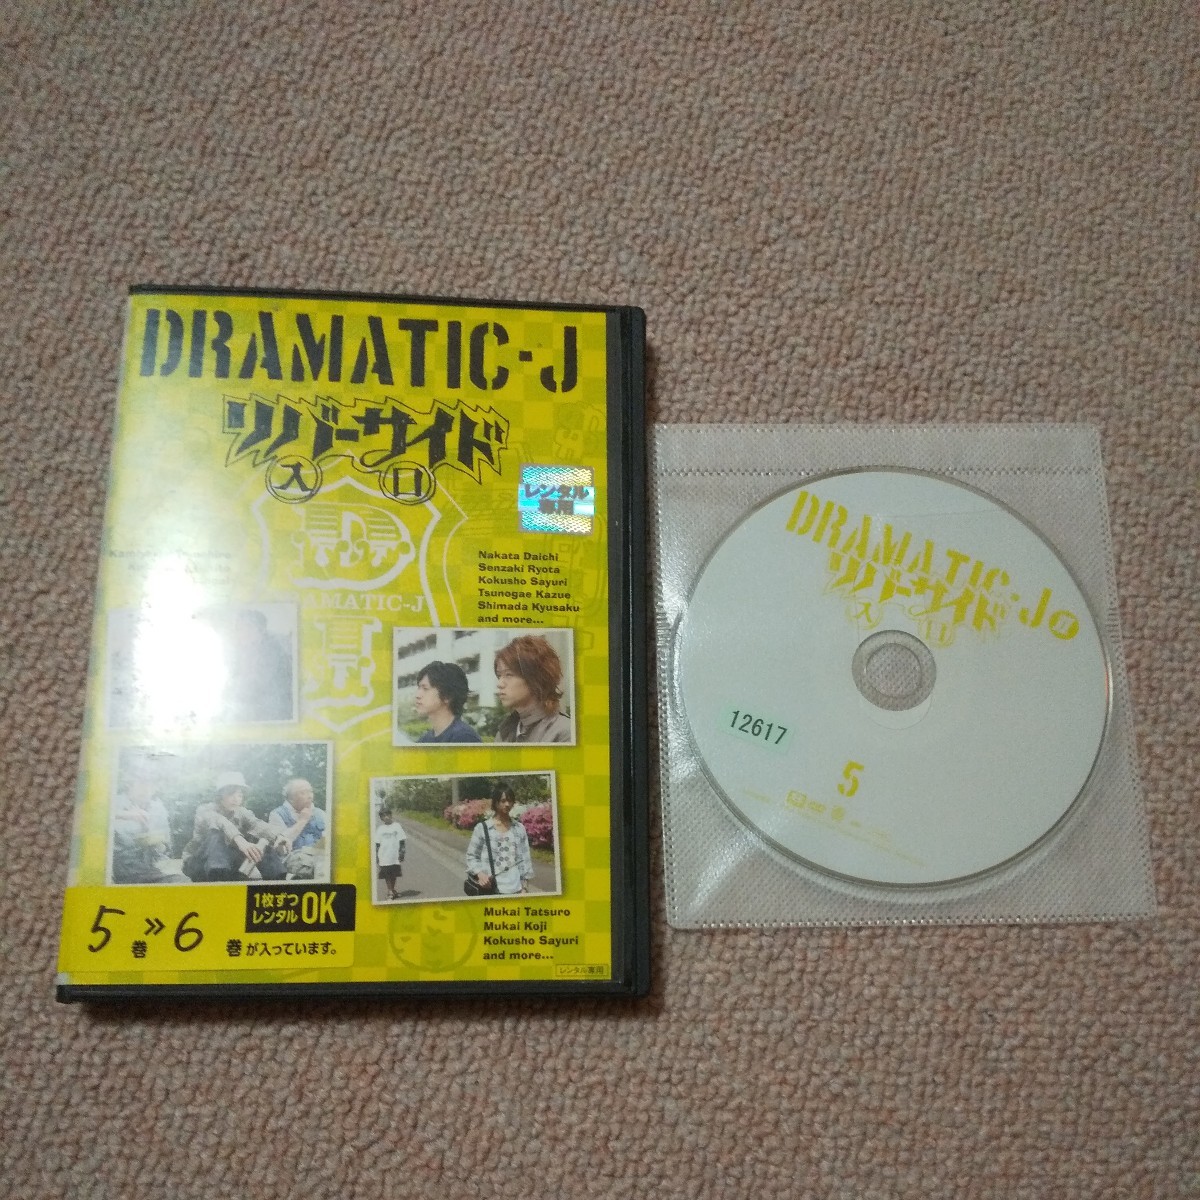 DRAMATIC-J「リバーサイド入口」他 [DVD]5巻6巻セットSnow Man 向井